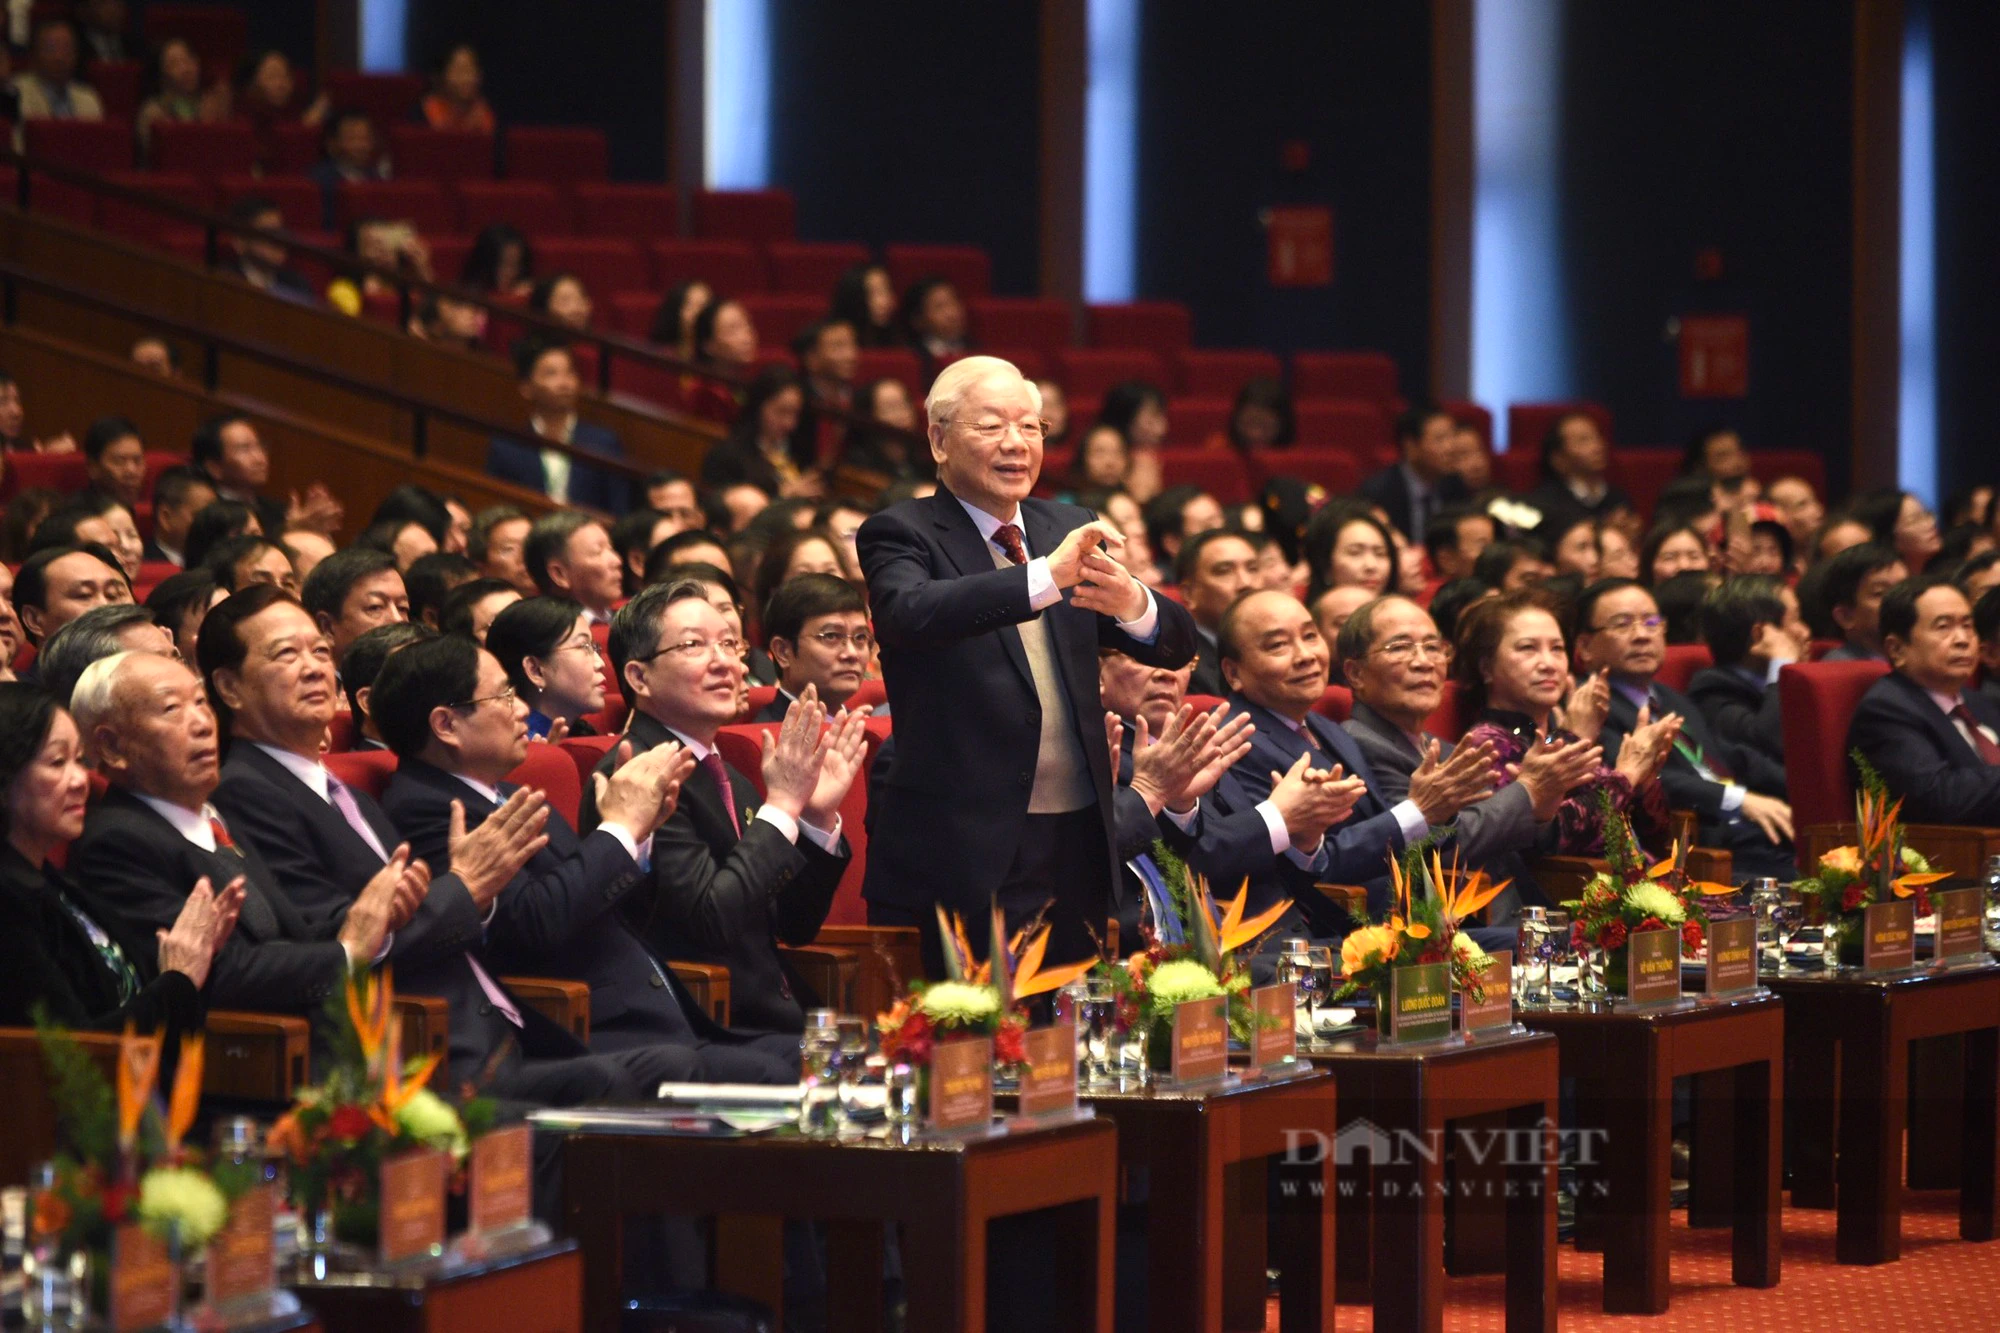 Toàn văn bài phát biểu của Tổng Bí thư Nguyễn Phú Trọng tại Đại hội đại biểu toàn quốc Hội NDVN lần thứ VIII - Ảnh 2.